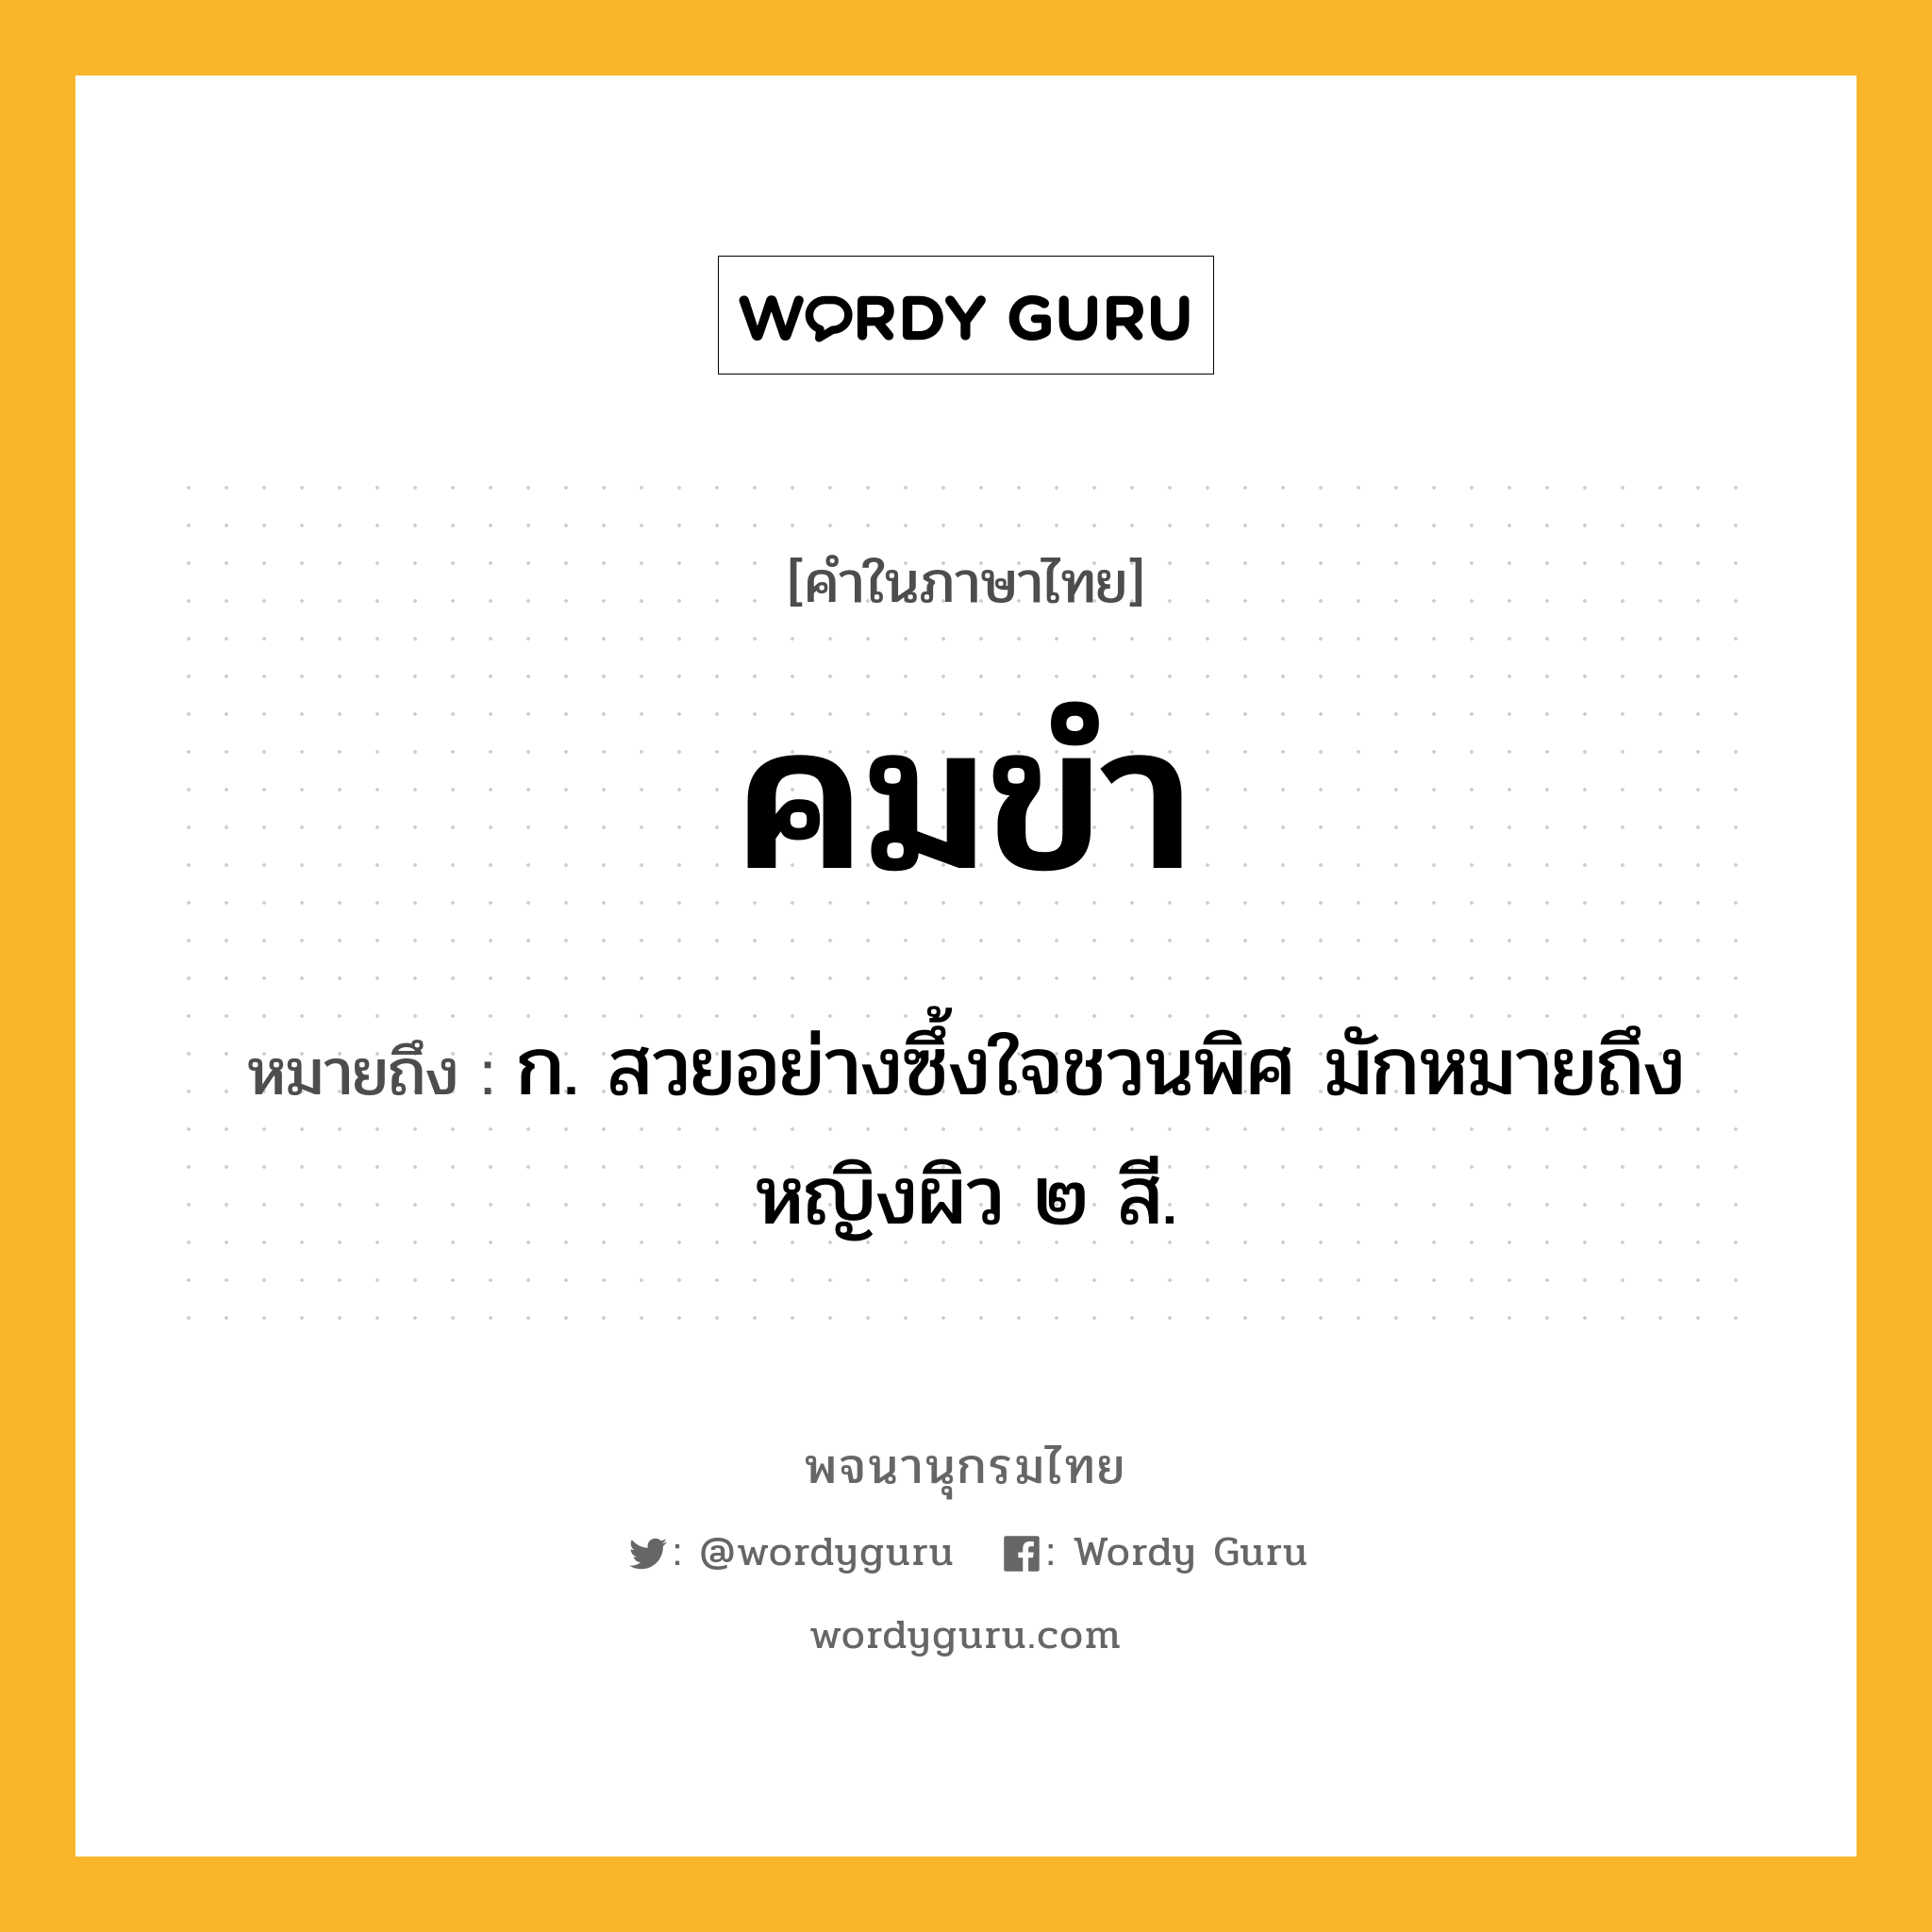 คมขำ ความหมาย หมายถึงอะไร?, คำในภาษาไทย คมขำ หมายถึง ก. สวยอย่างซึ้งใจชวนพิศ มักหมายถึงหญิงผิว ๒ สี.